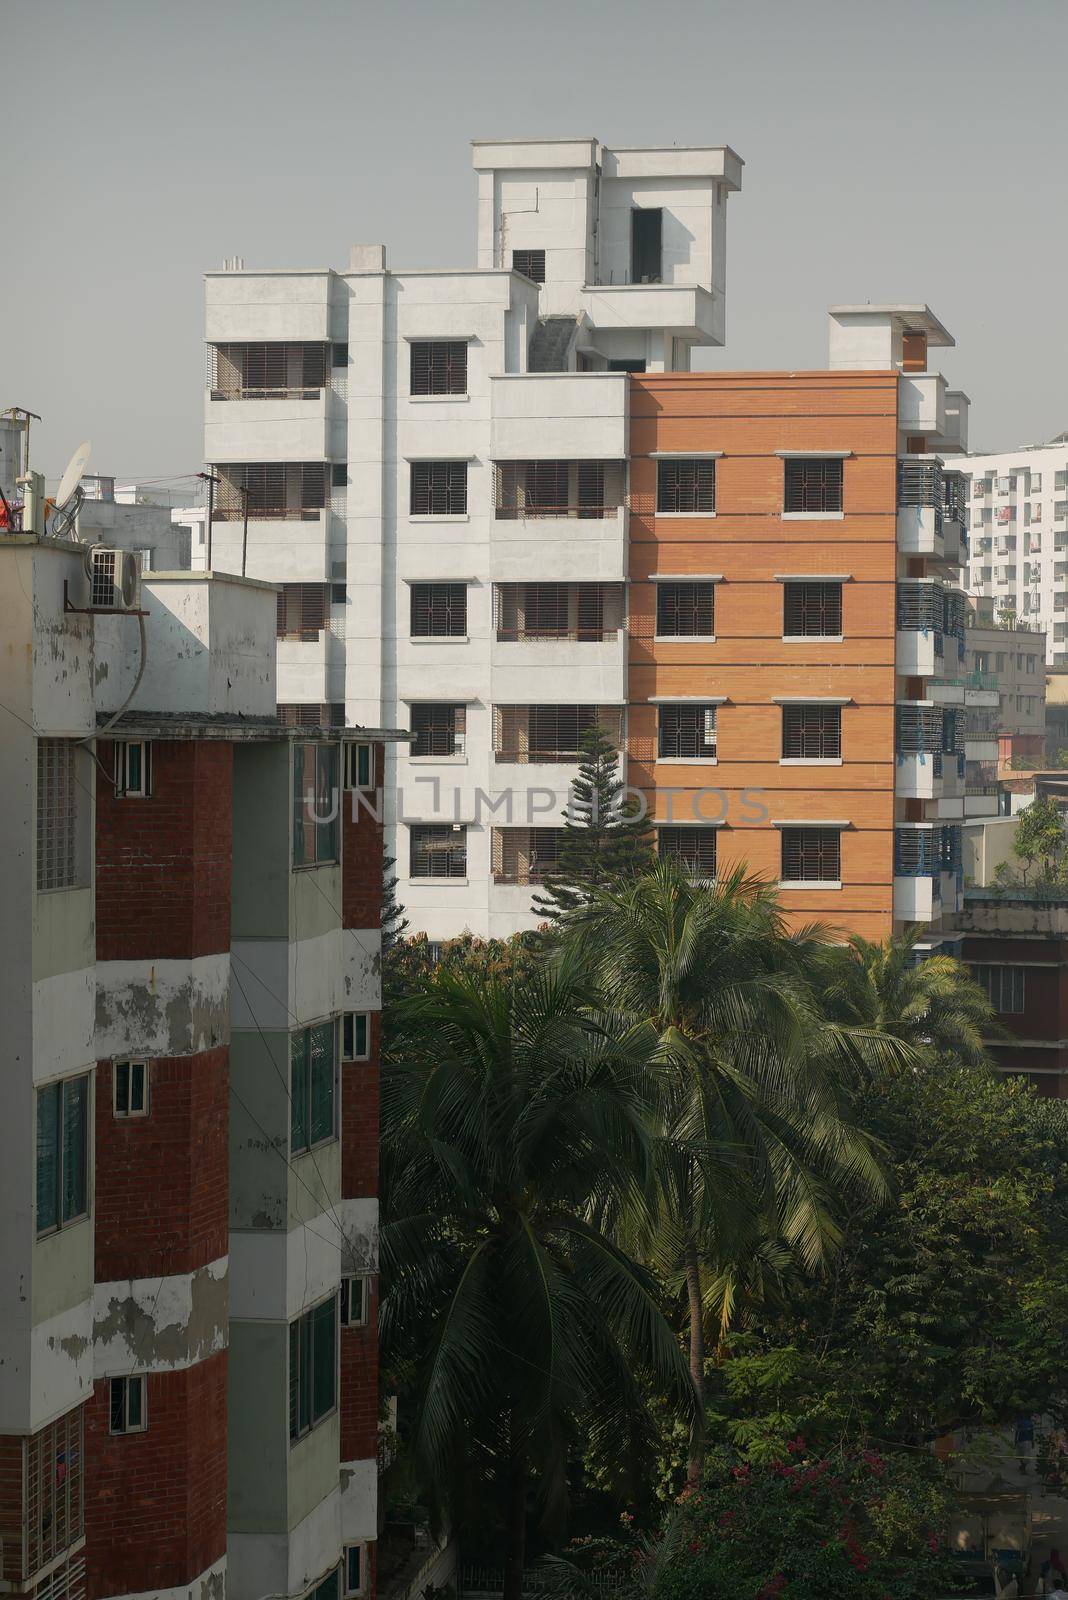 residential buildings in dhaka in bangladesh .